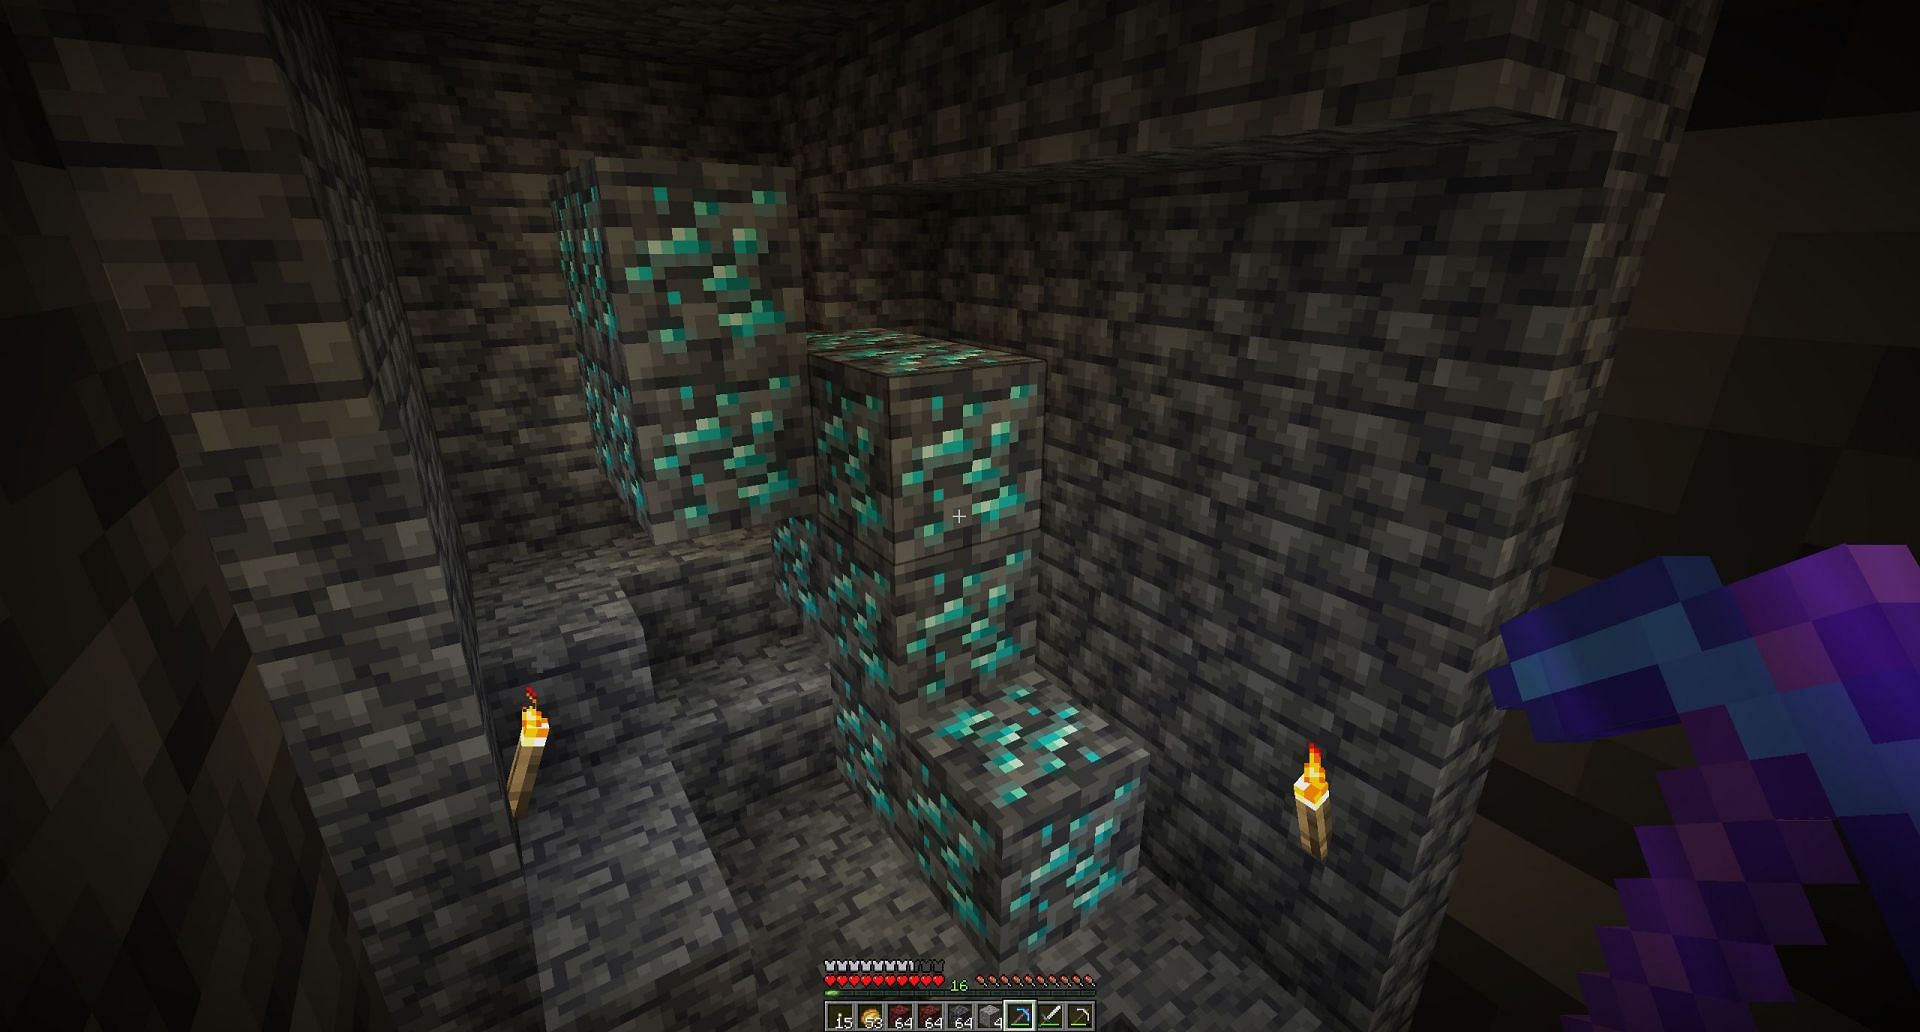 Ore mining levels (Image via u/xXTooEasyXx on Reddit)